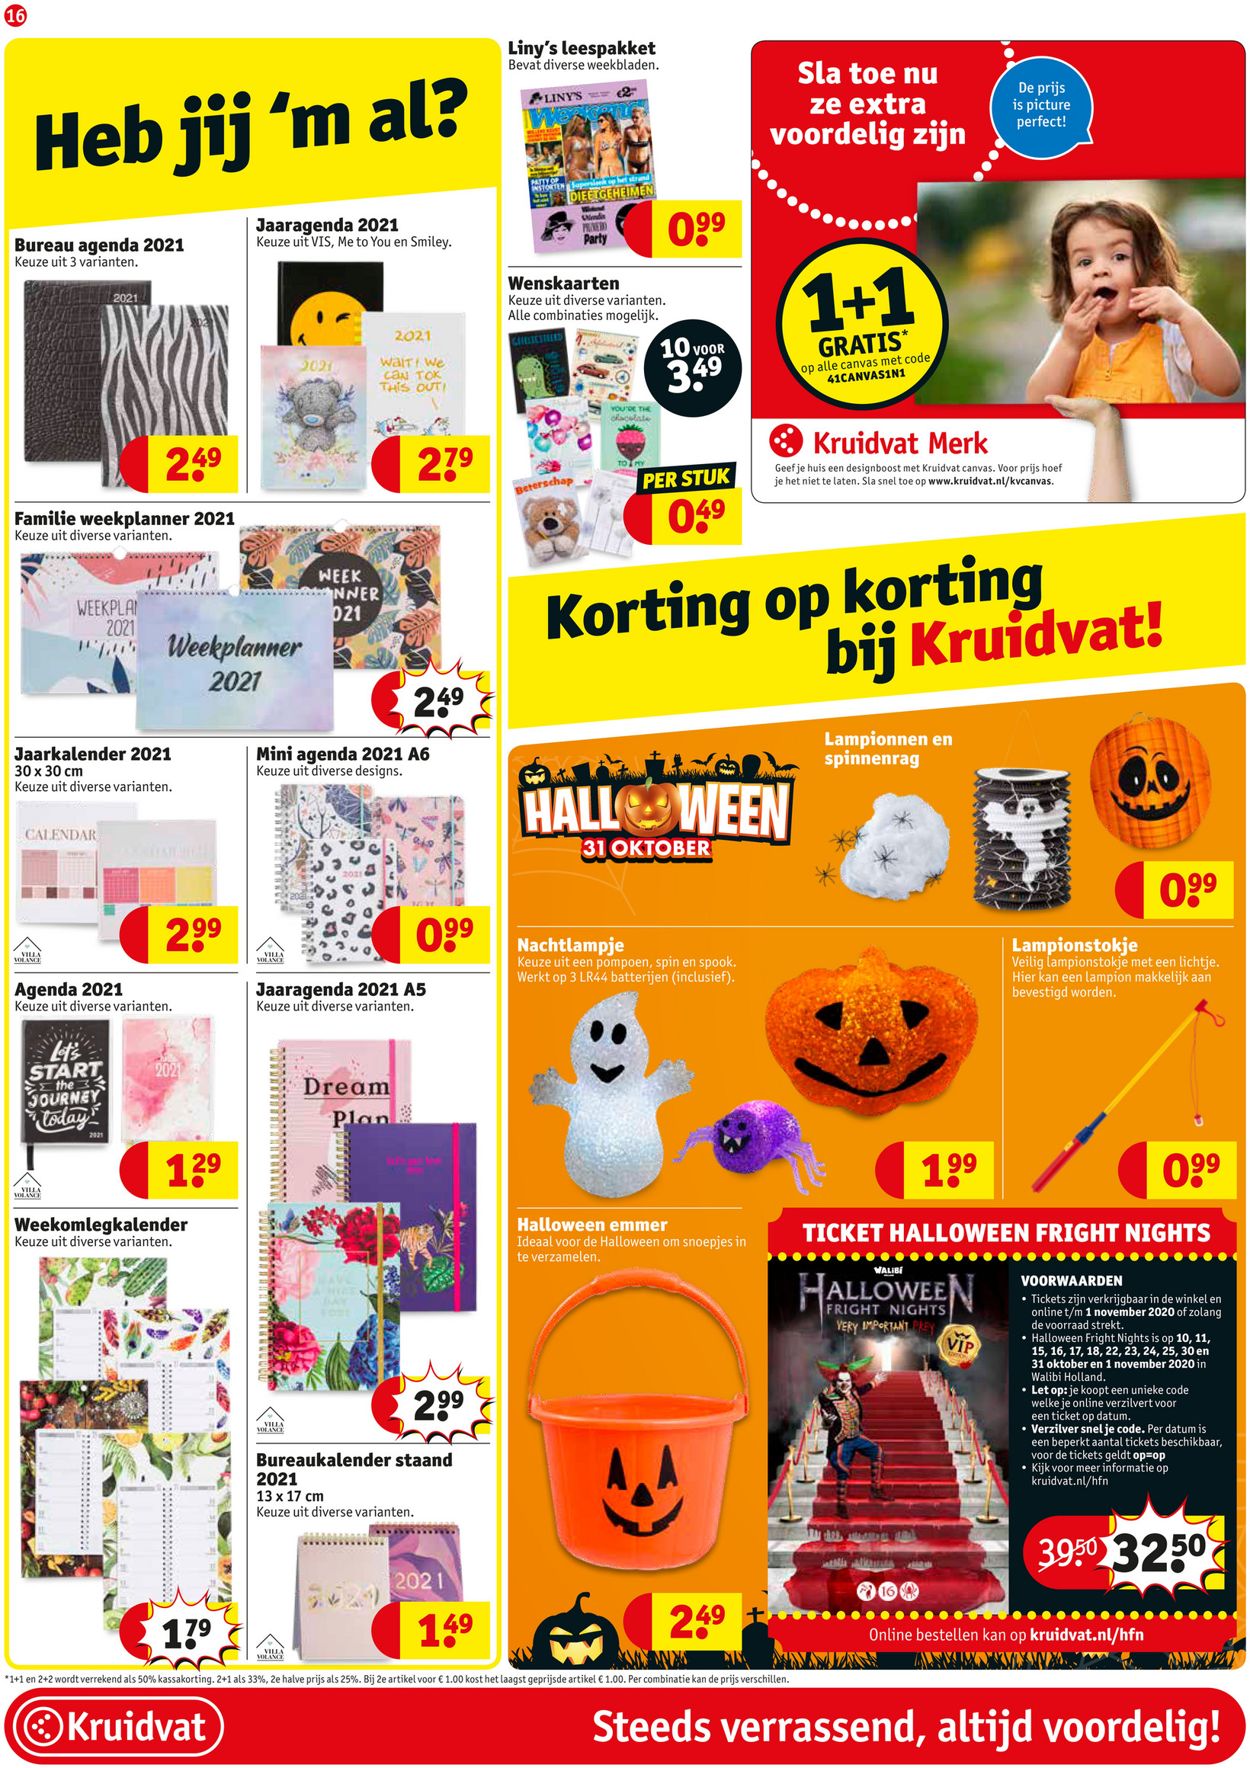 Leerling Piraat koppeling Kruidvat Actuele folder 13.10 - 18.10.2020 [16] - wekelijkse-folders.nl